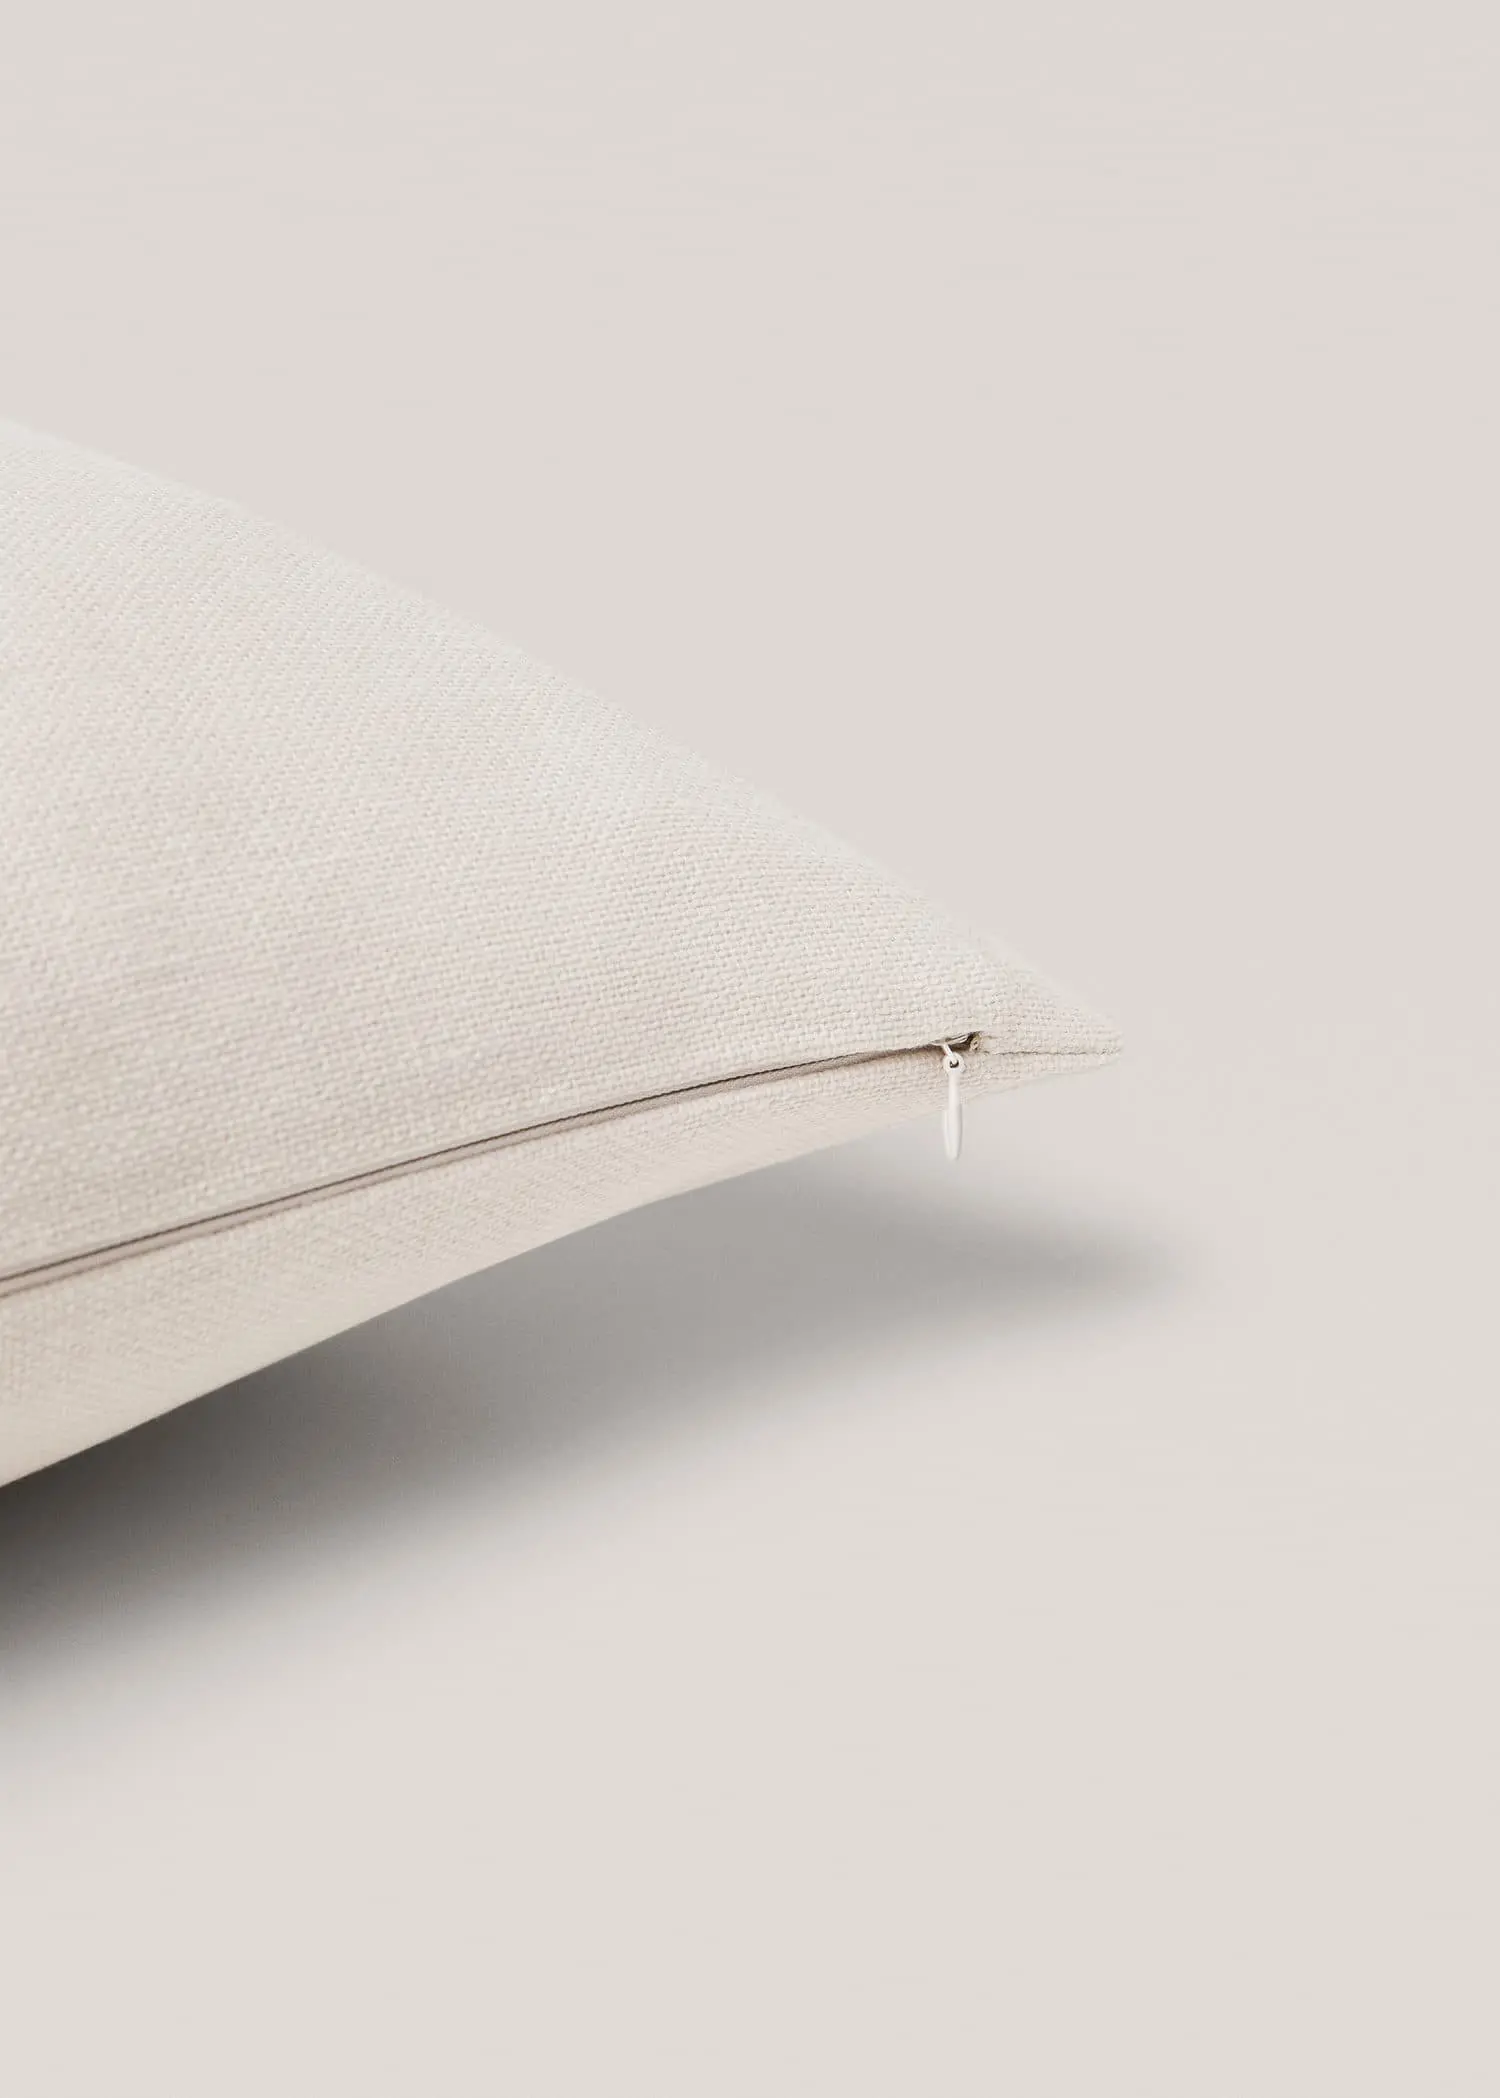 Mango Textured cotton cushion cover 70x90cm. 3